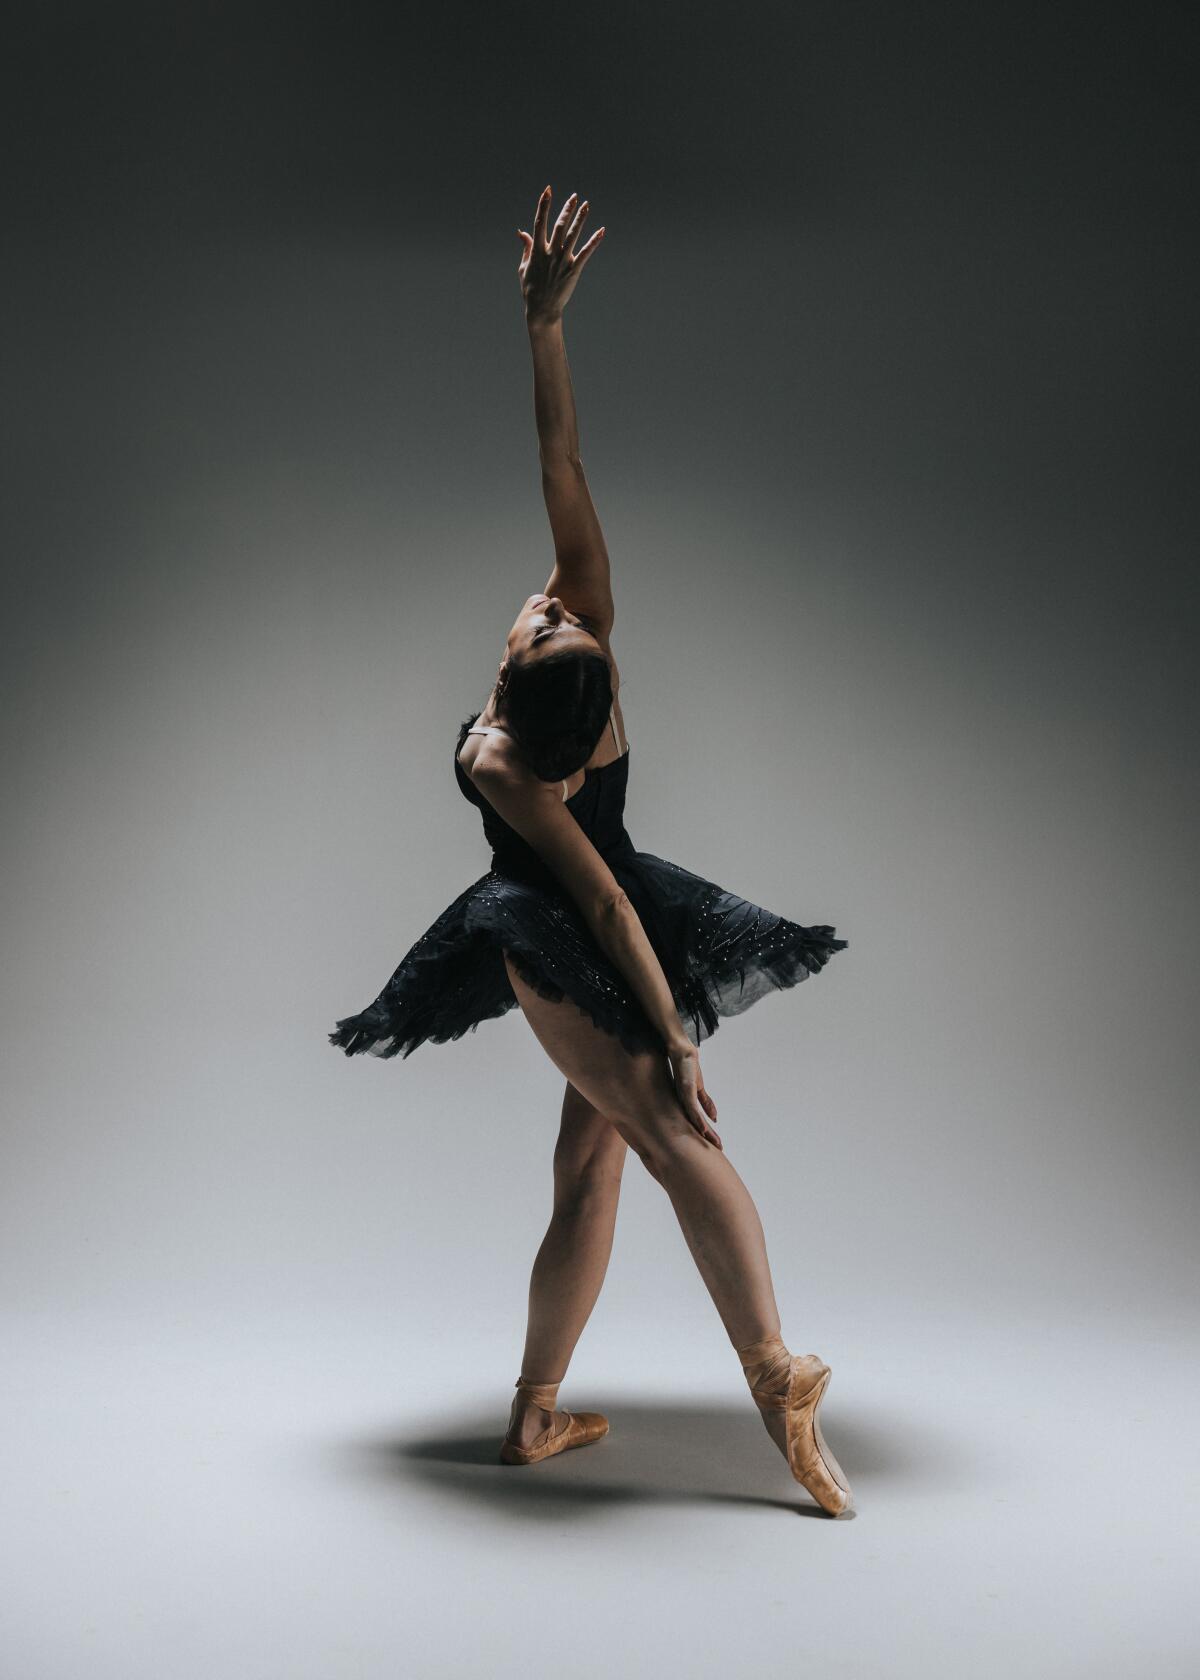 Tara Ghassemieh in Golden State Ballet's "Emerge."